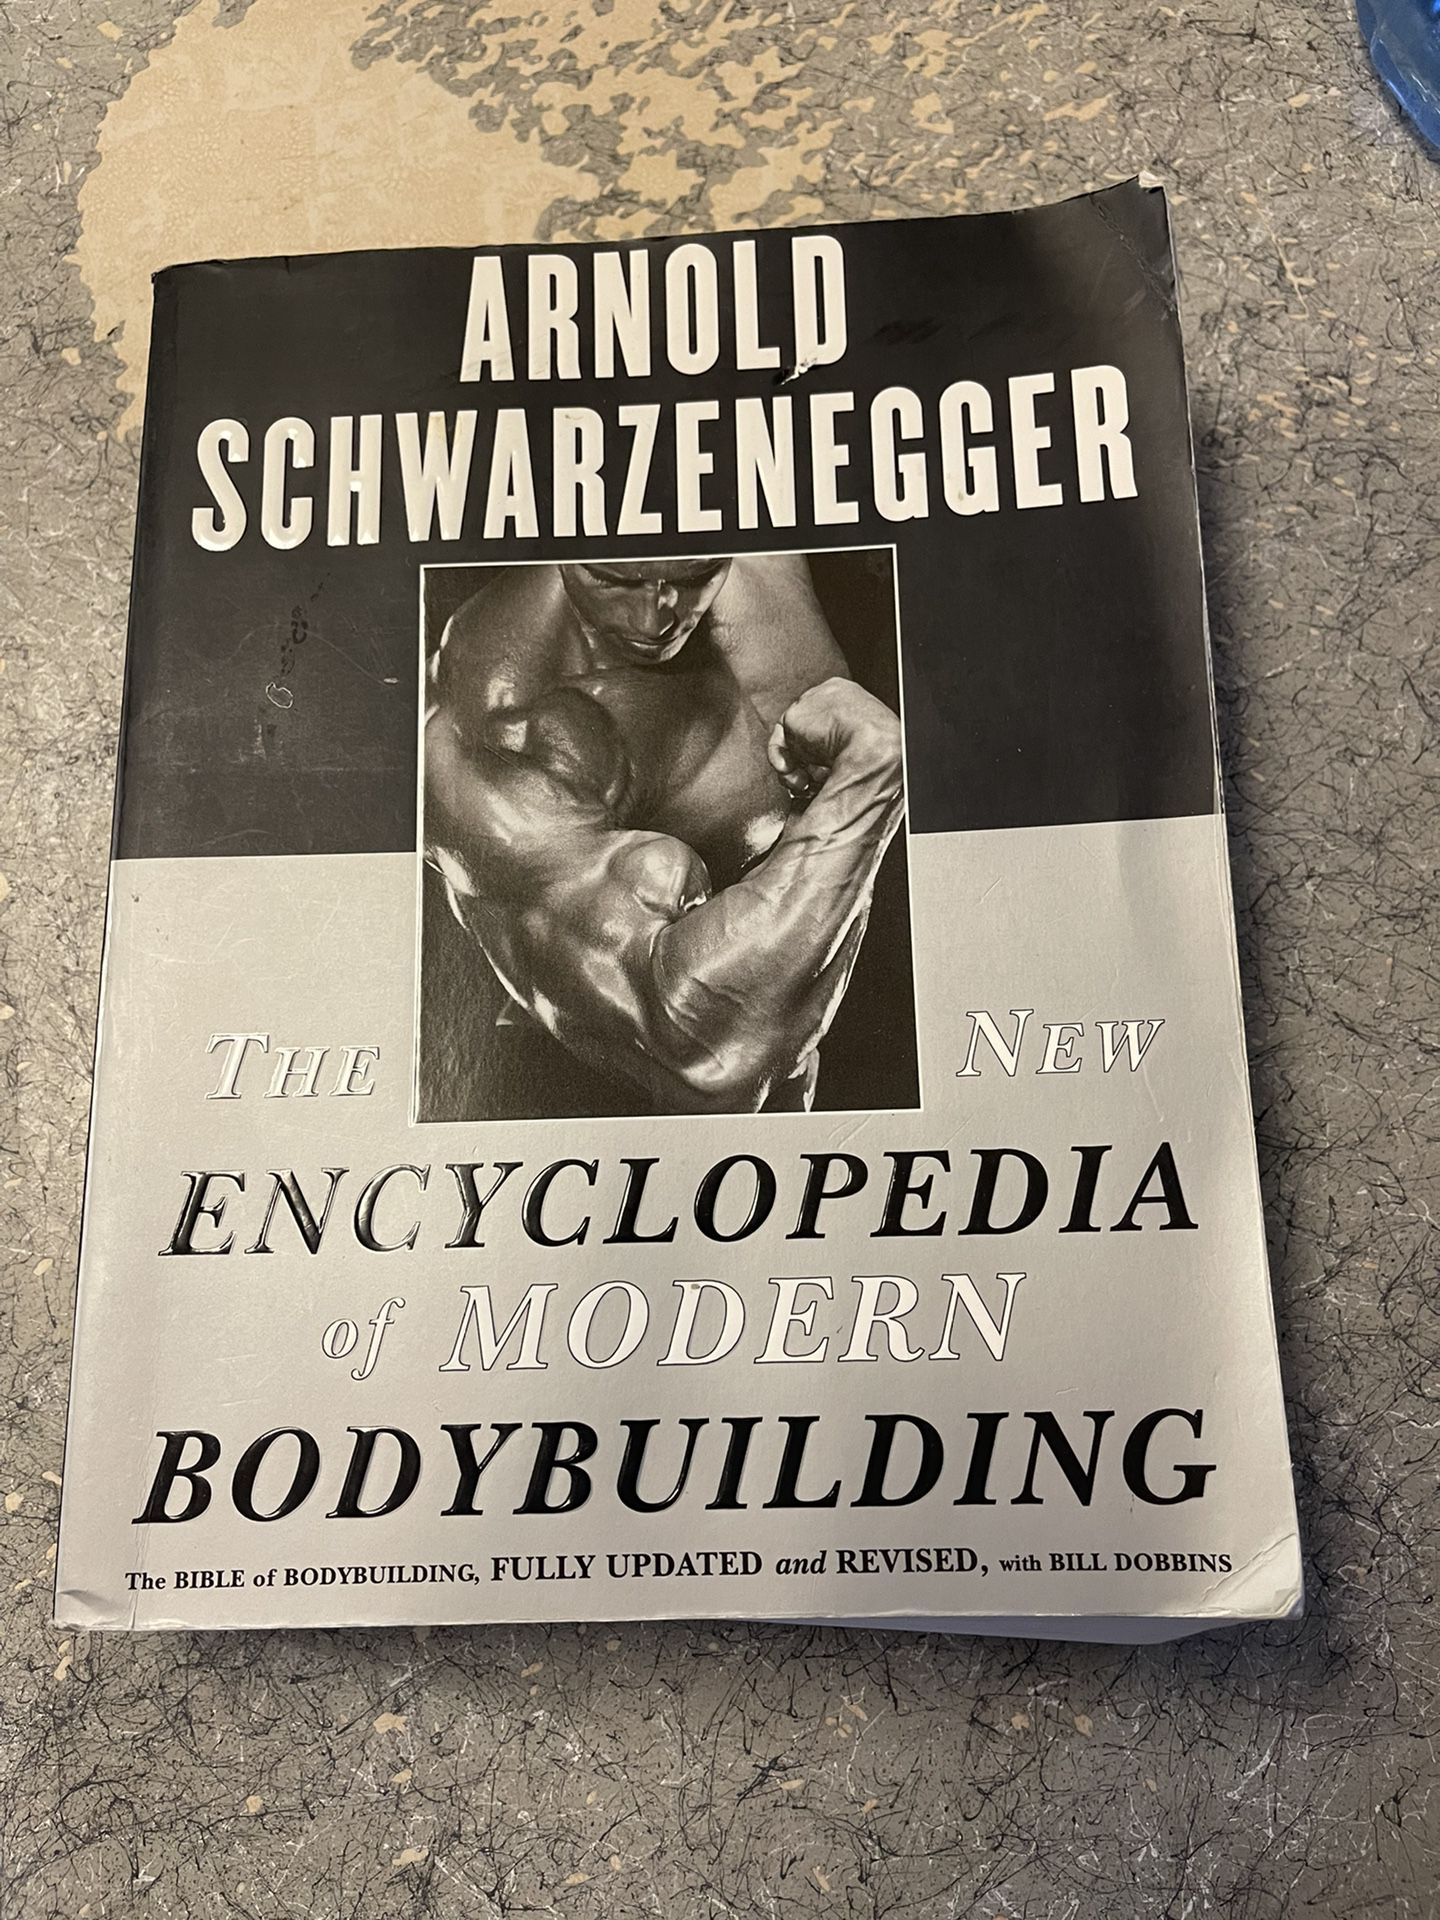 Arnold Schwarzenegger the encyclopedia of bodybuilding